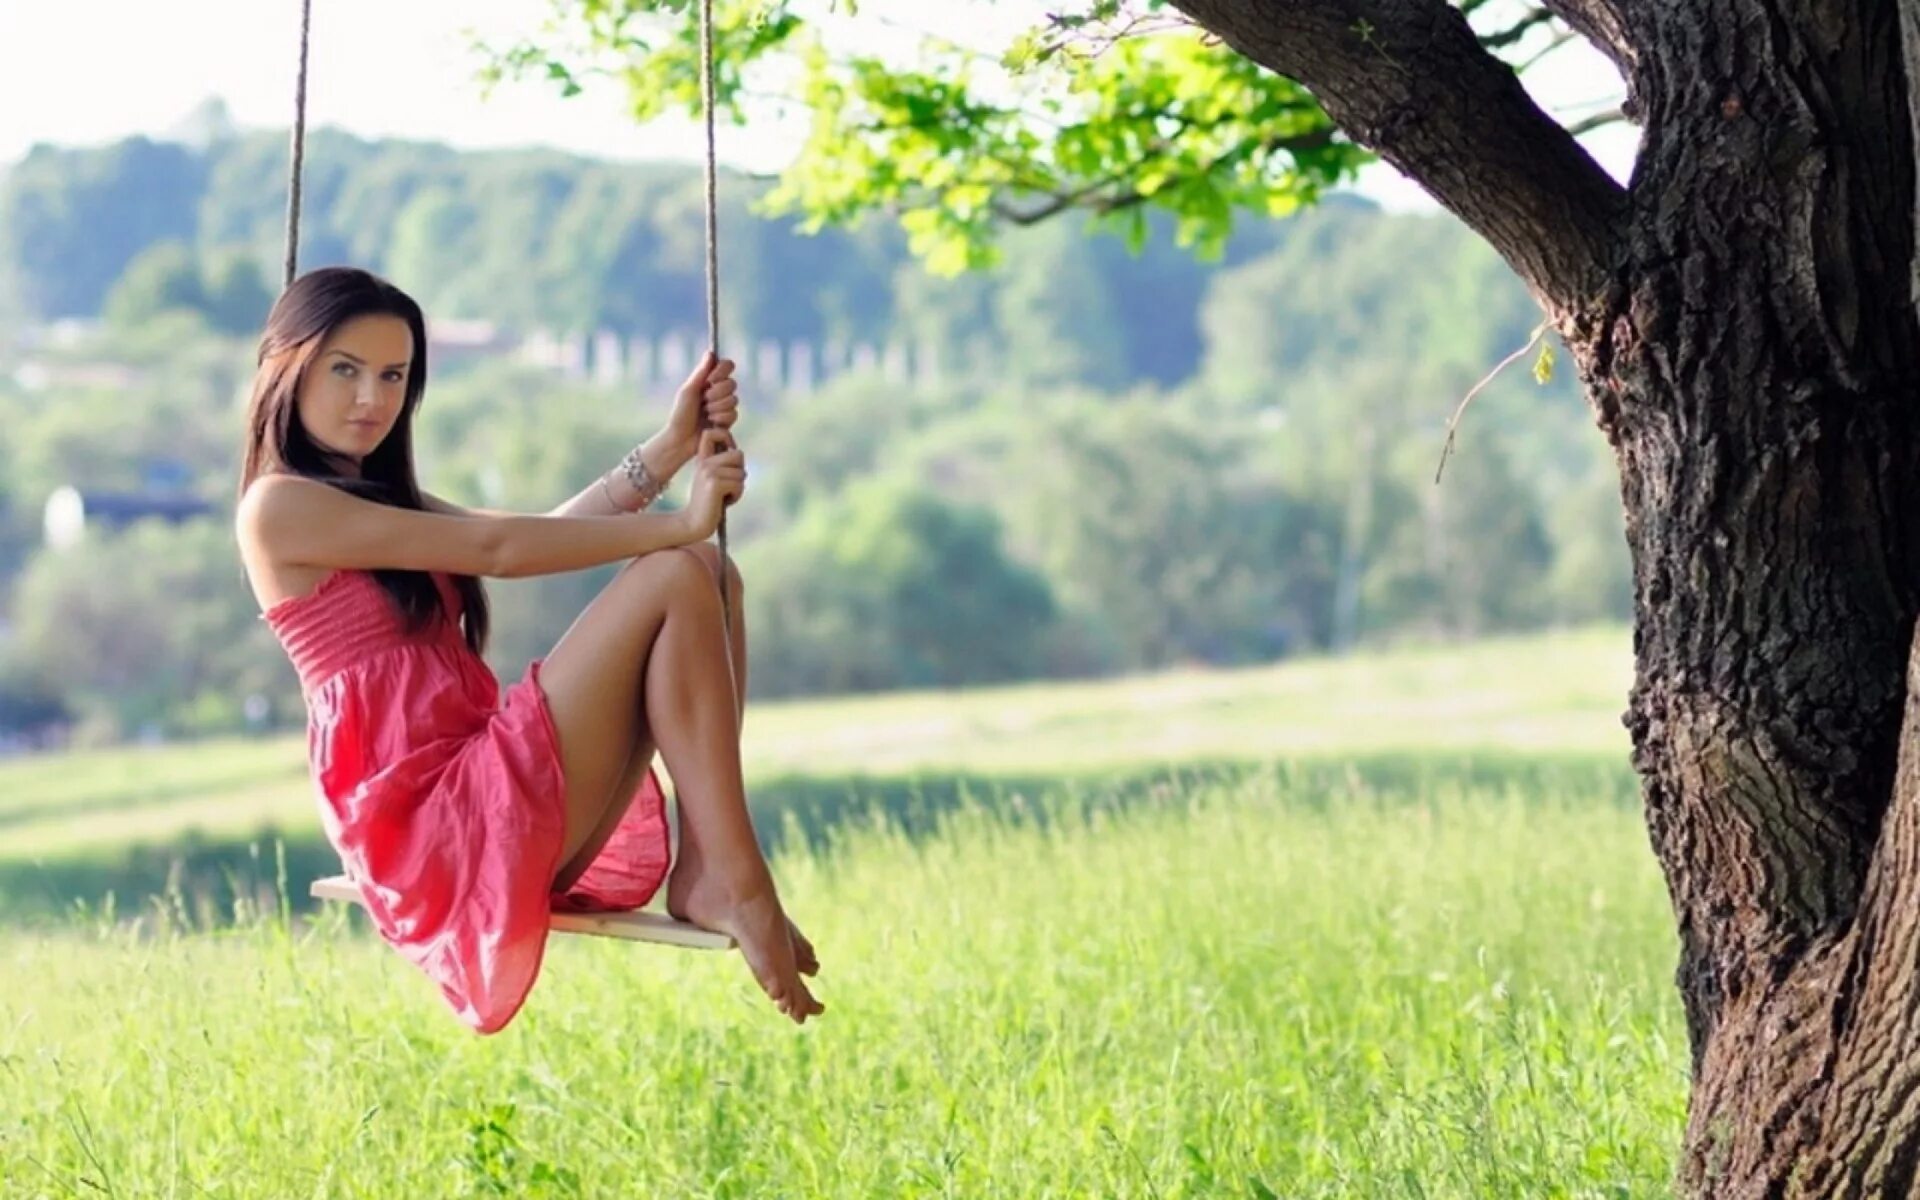 Swinging showing. Девушка на качелях. Красивая девушка на качелях. Фотосессия на природе. Красивые девушки на природе.